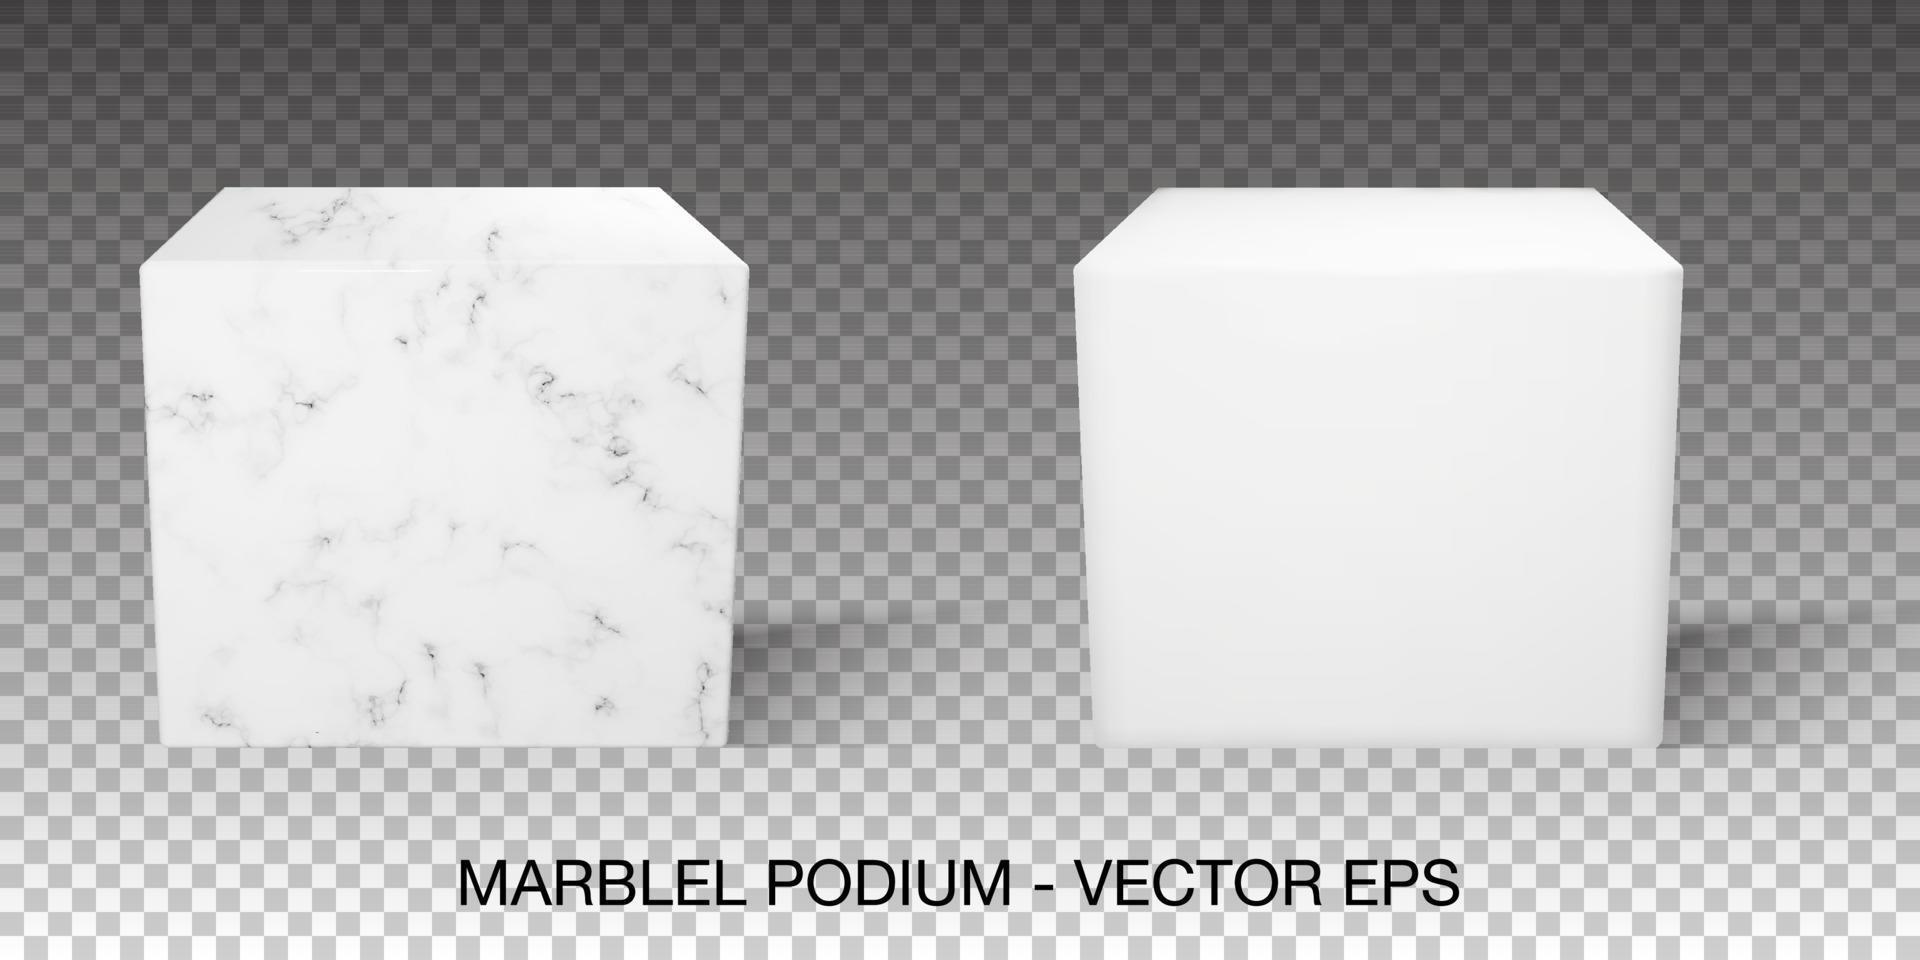 scène en marbre sans arrière-plan. support de cube blanc isolé pour galerie ou vitrine publicitaire. Objet carré de rendu 3D avec texture vecteur